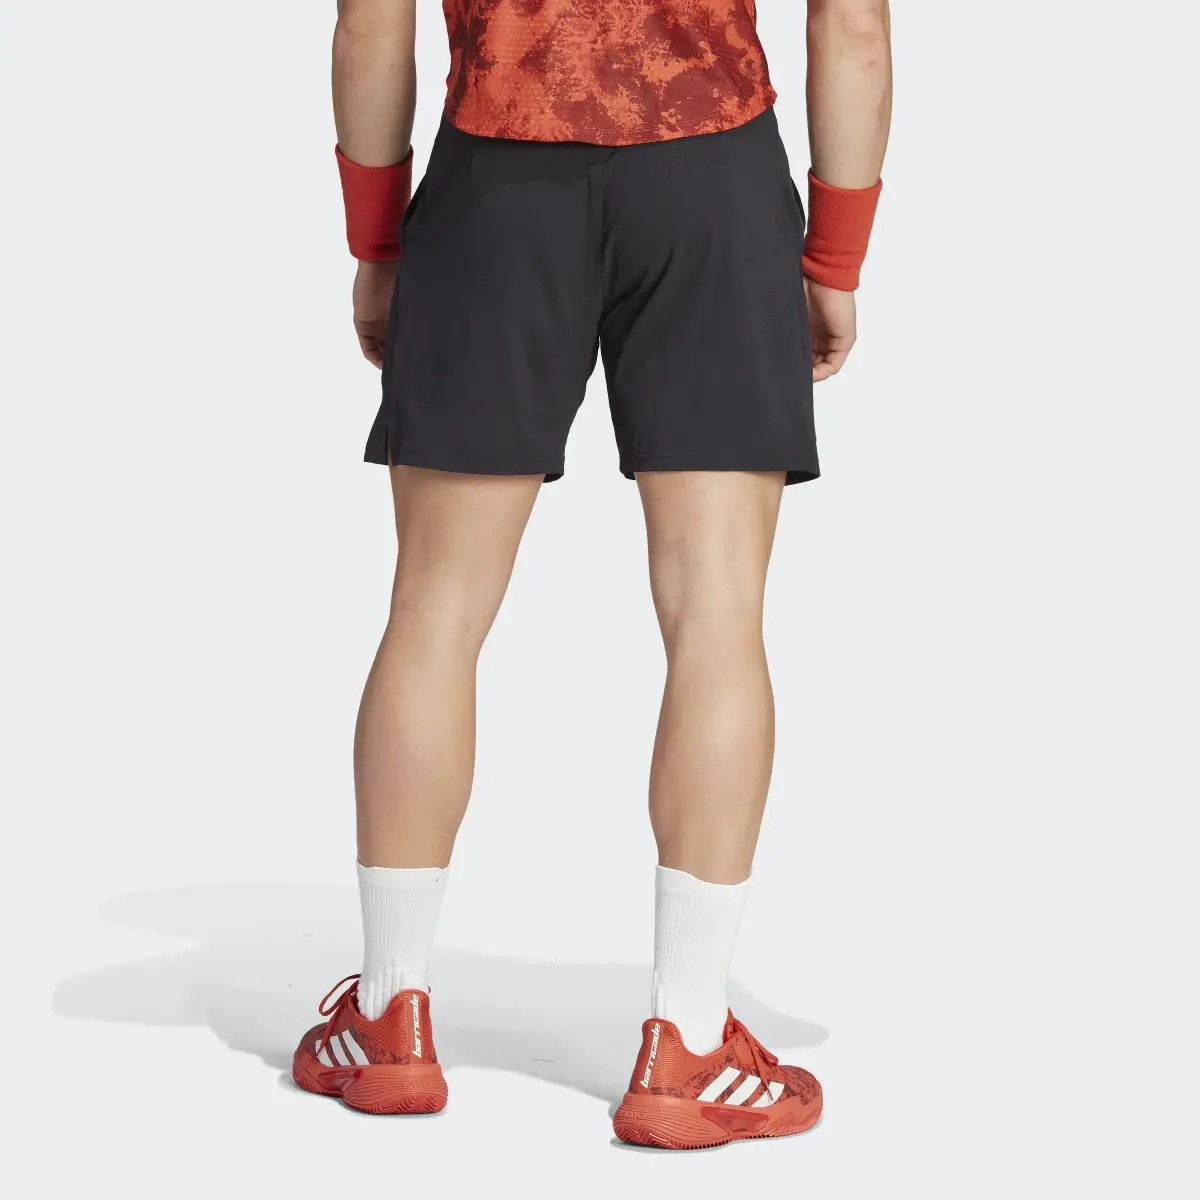 Adidas Ergo Tennis Shorts. 3